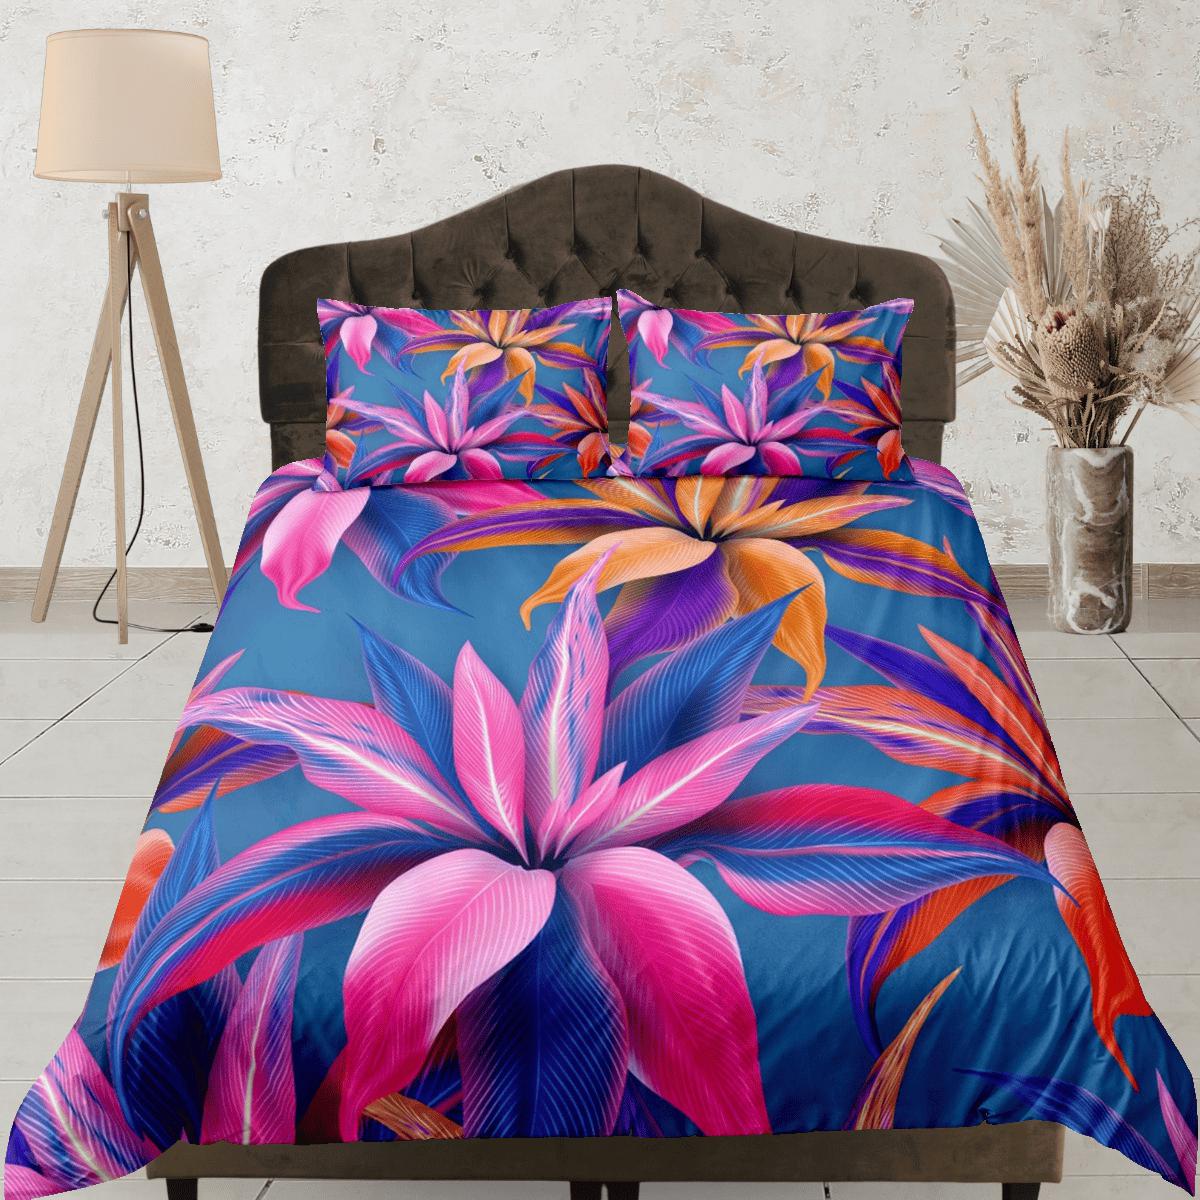 daintyduvet Purple floral bedding, luxury duvet cover queen, king, boho duvet, designer bedding, aesthetic bedding, maximalist full size bedding